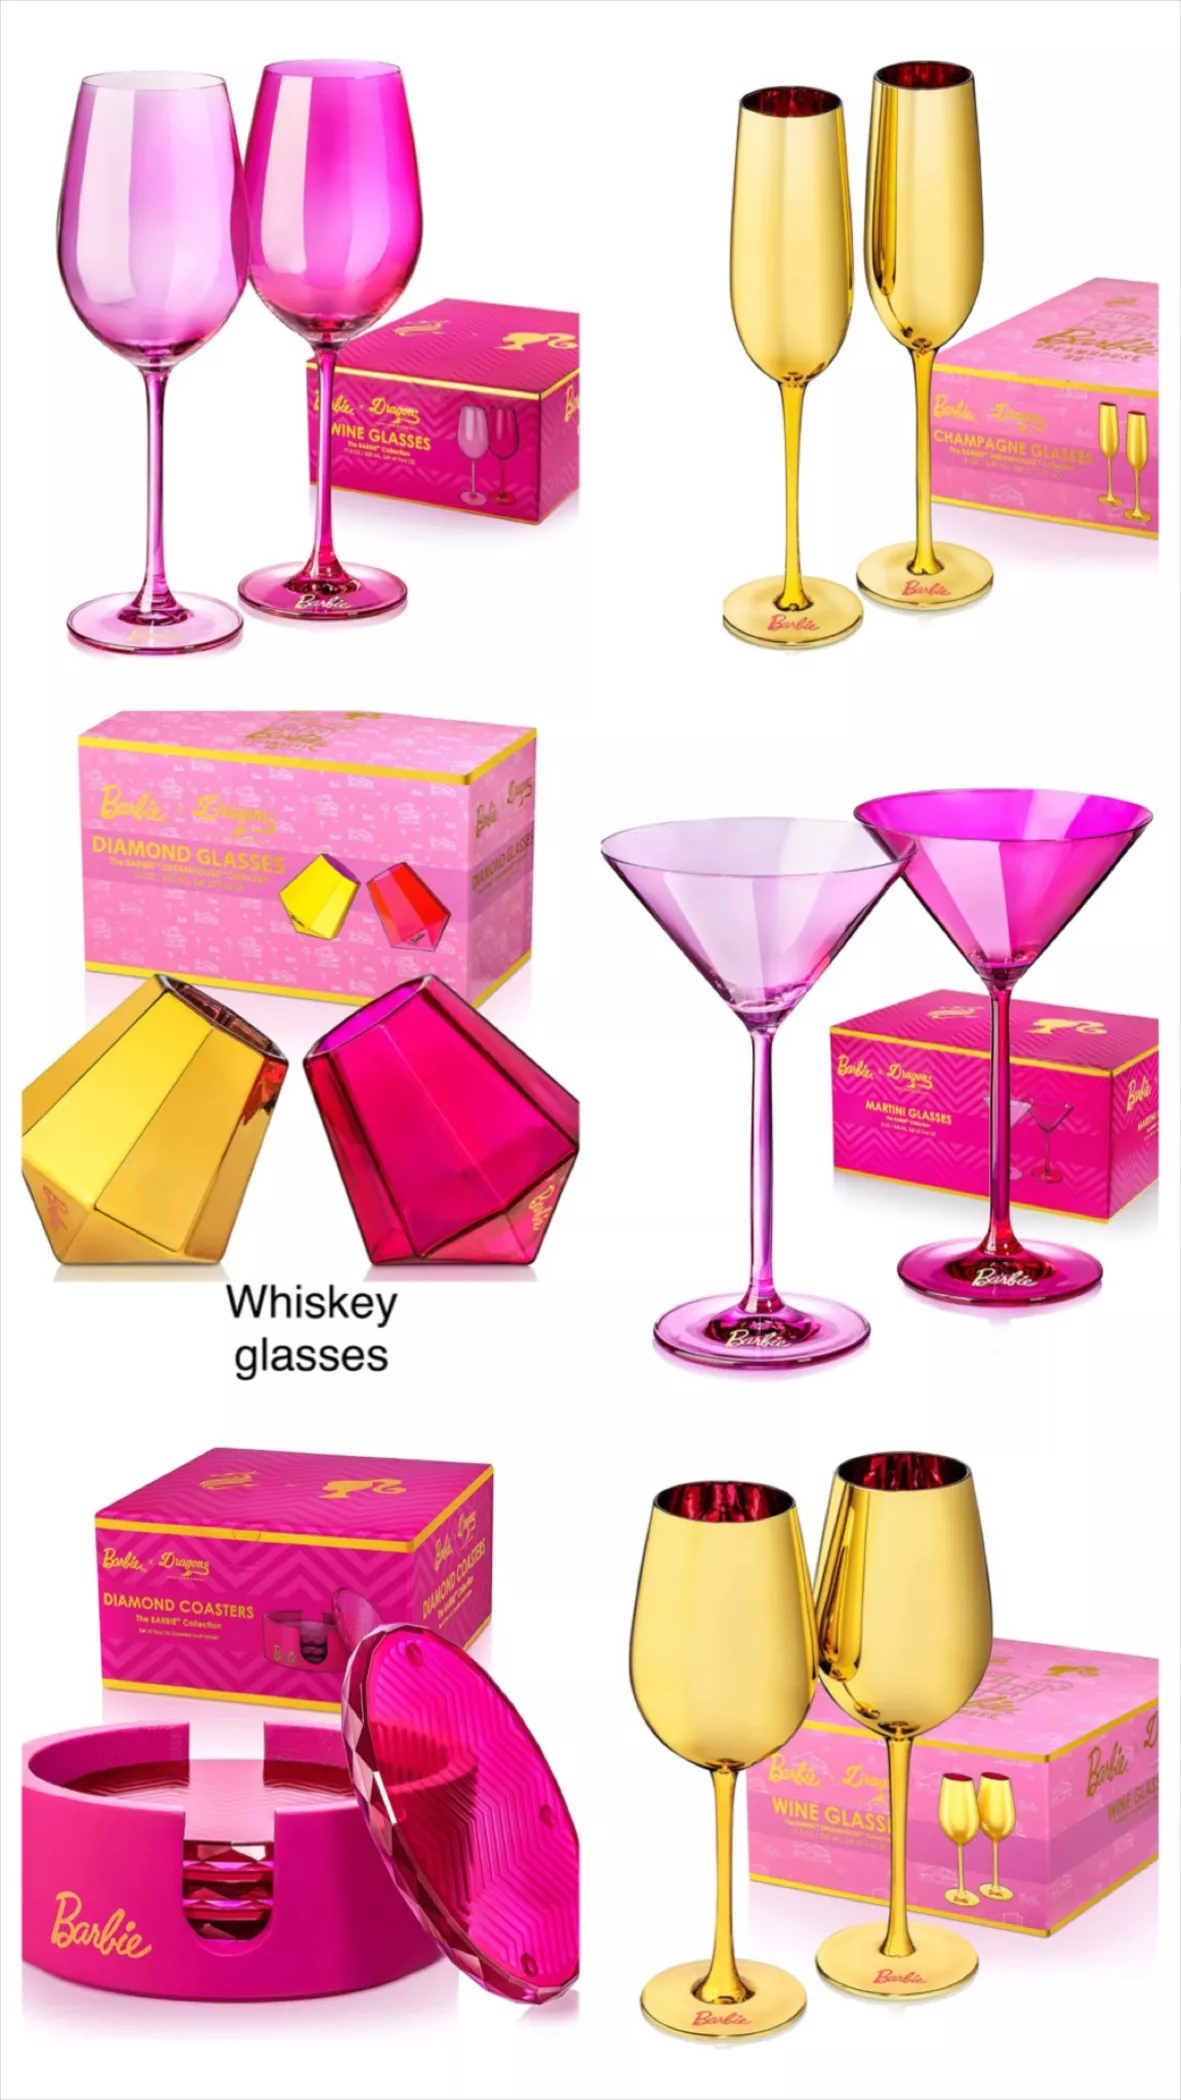 Barbie x Dragon Glassware Espresso … curated on LTK